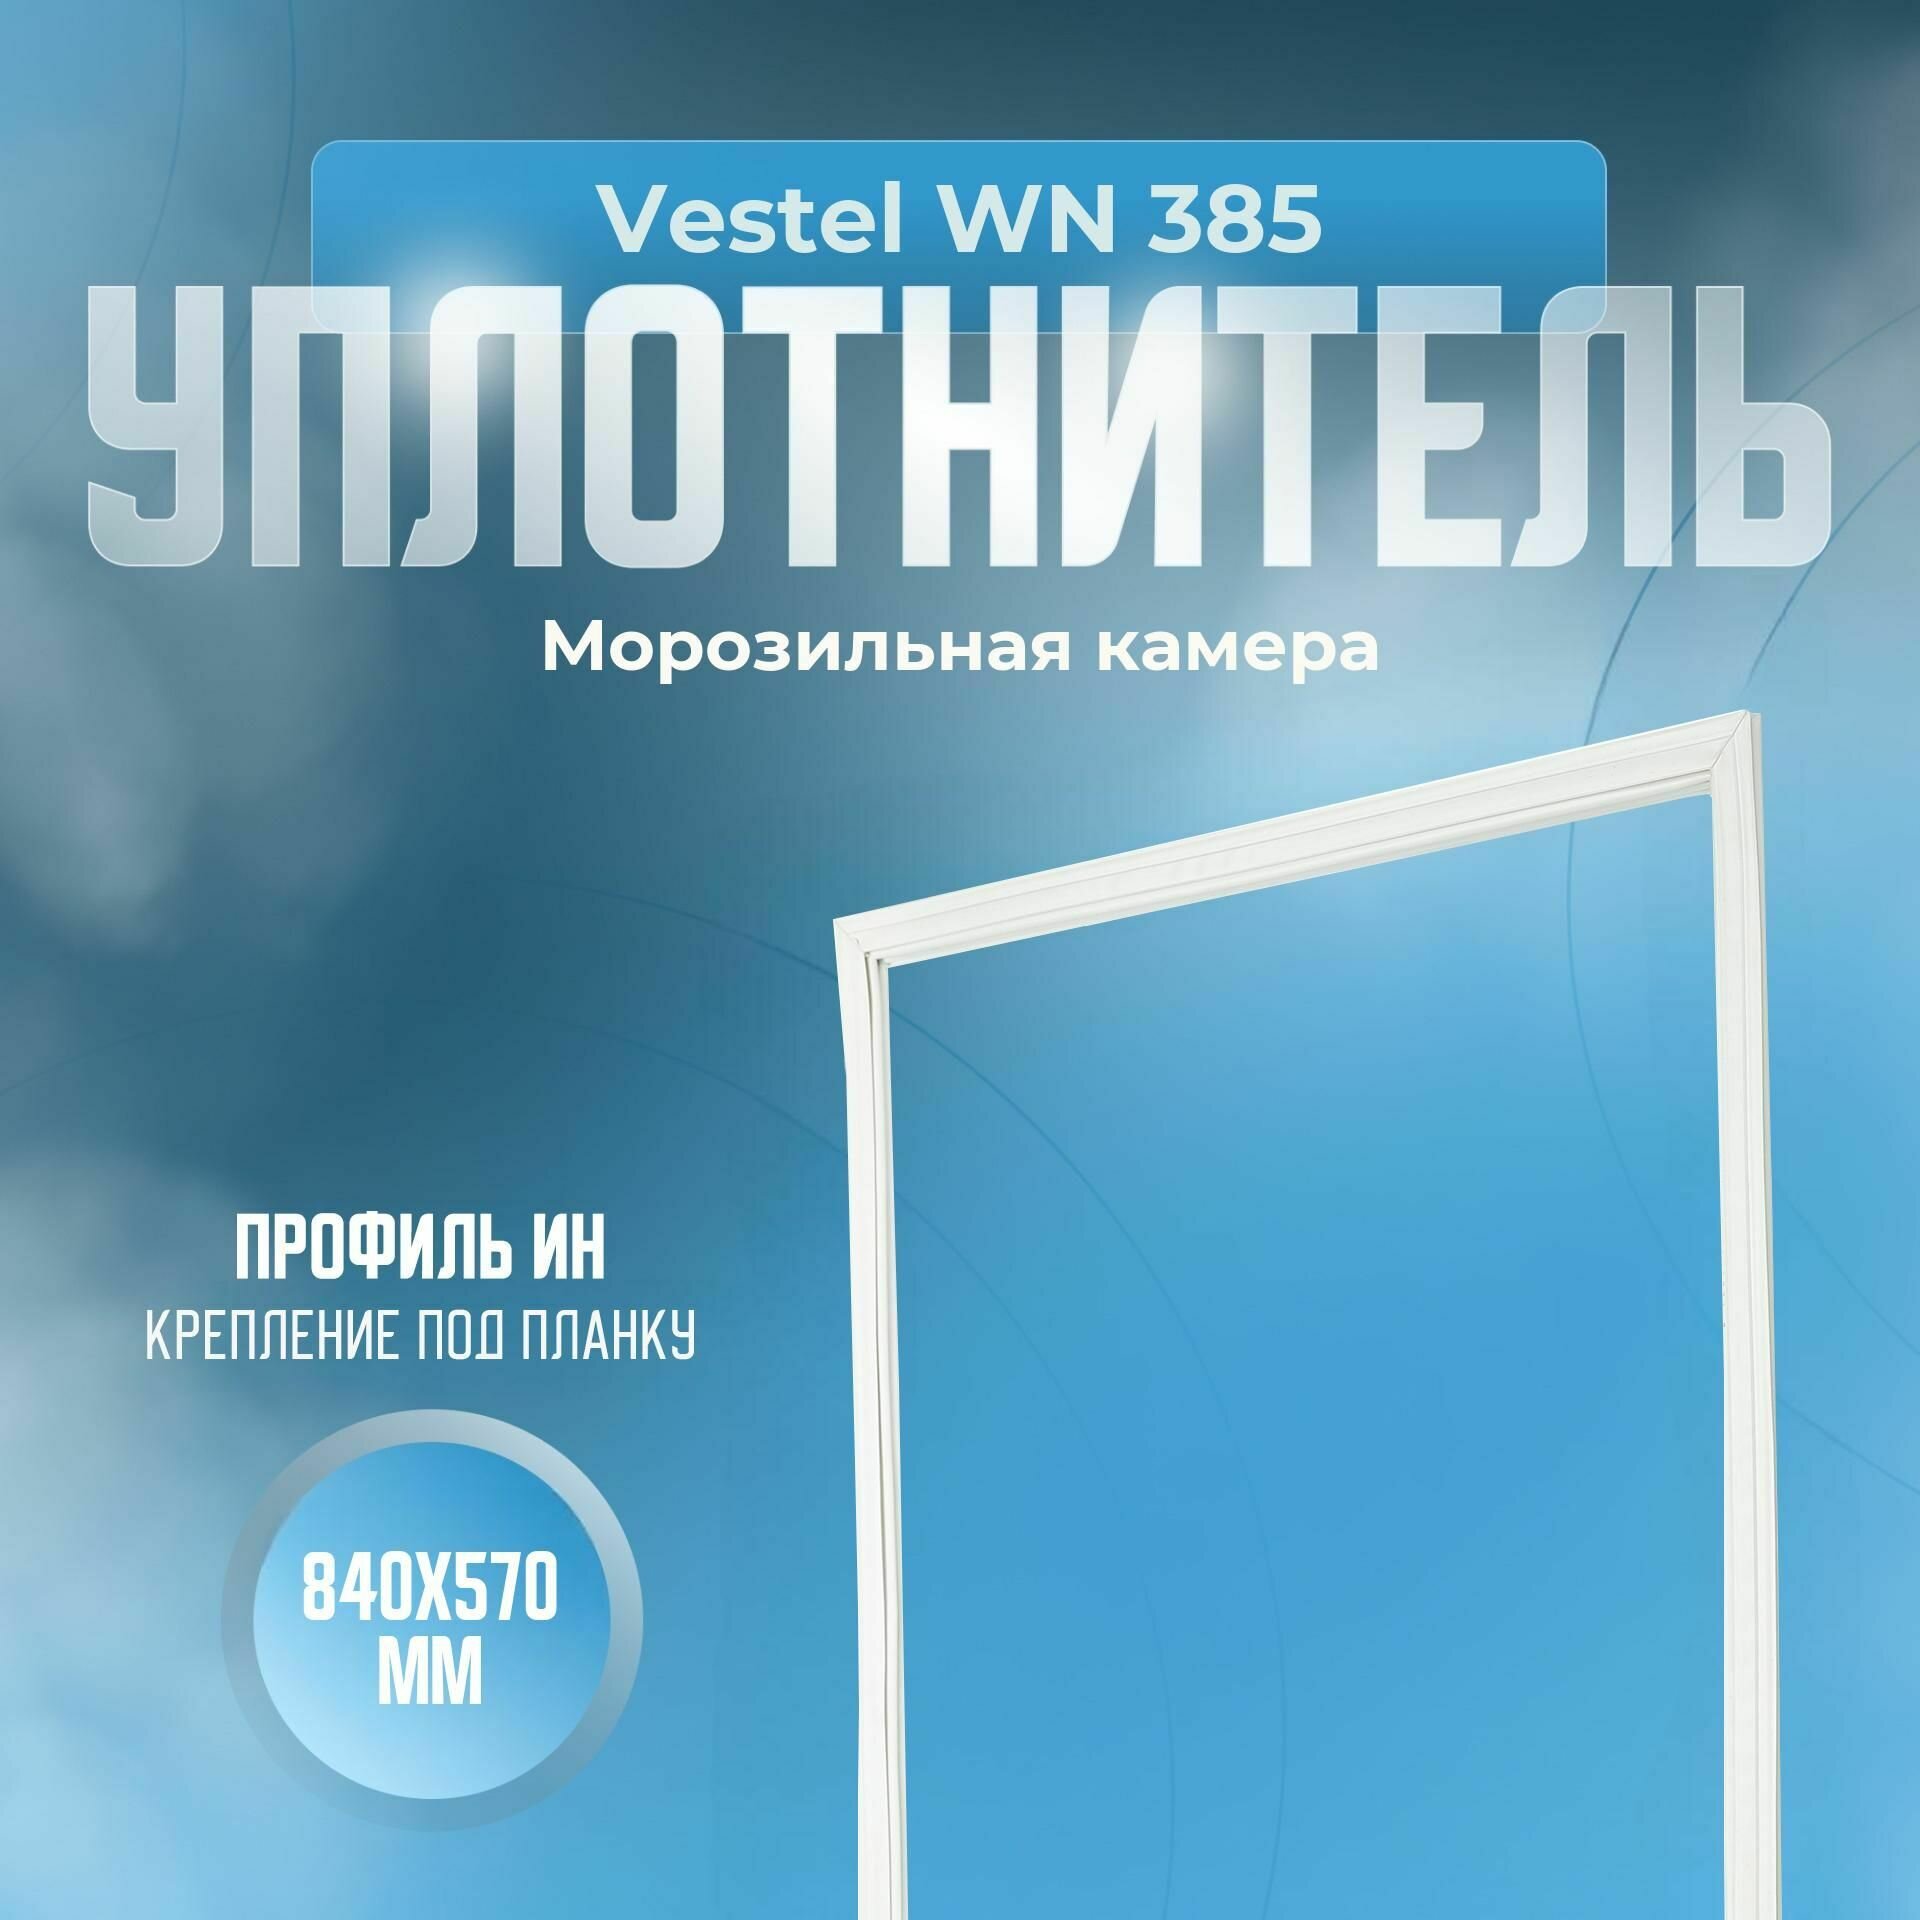 Уплотнитель Vestel WN 385. м. к, Размер - 840х570 мм. ИН